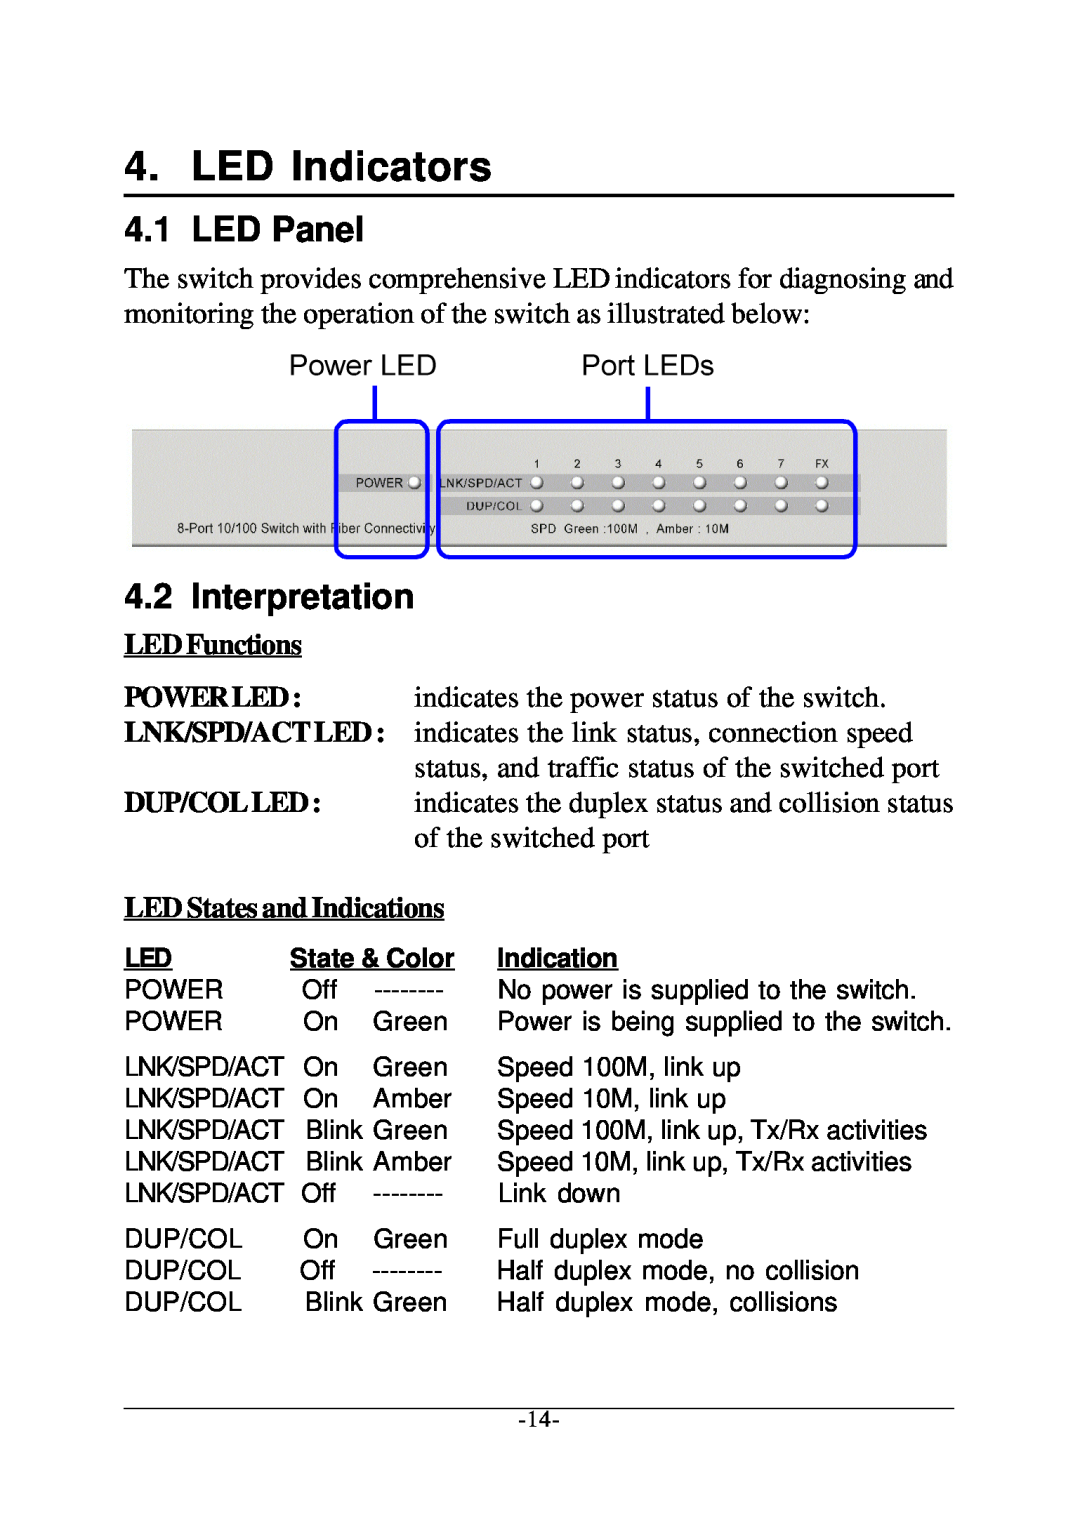 KTI Networks KS-108F manual LED Indicators, LED Panel, Interpretation 